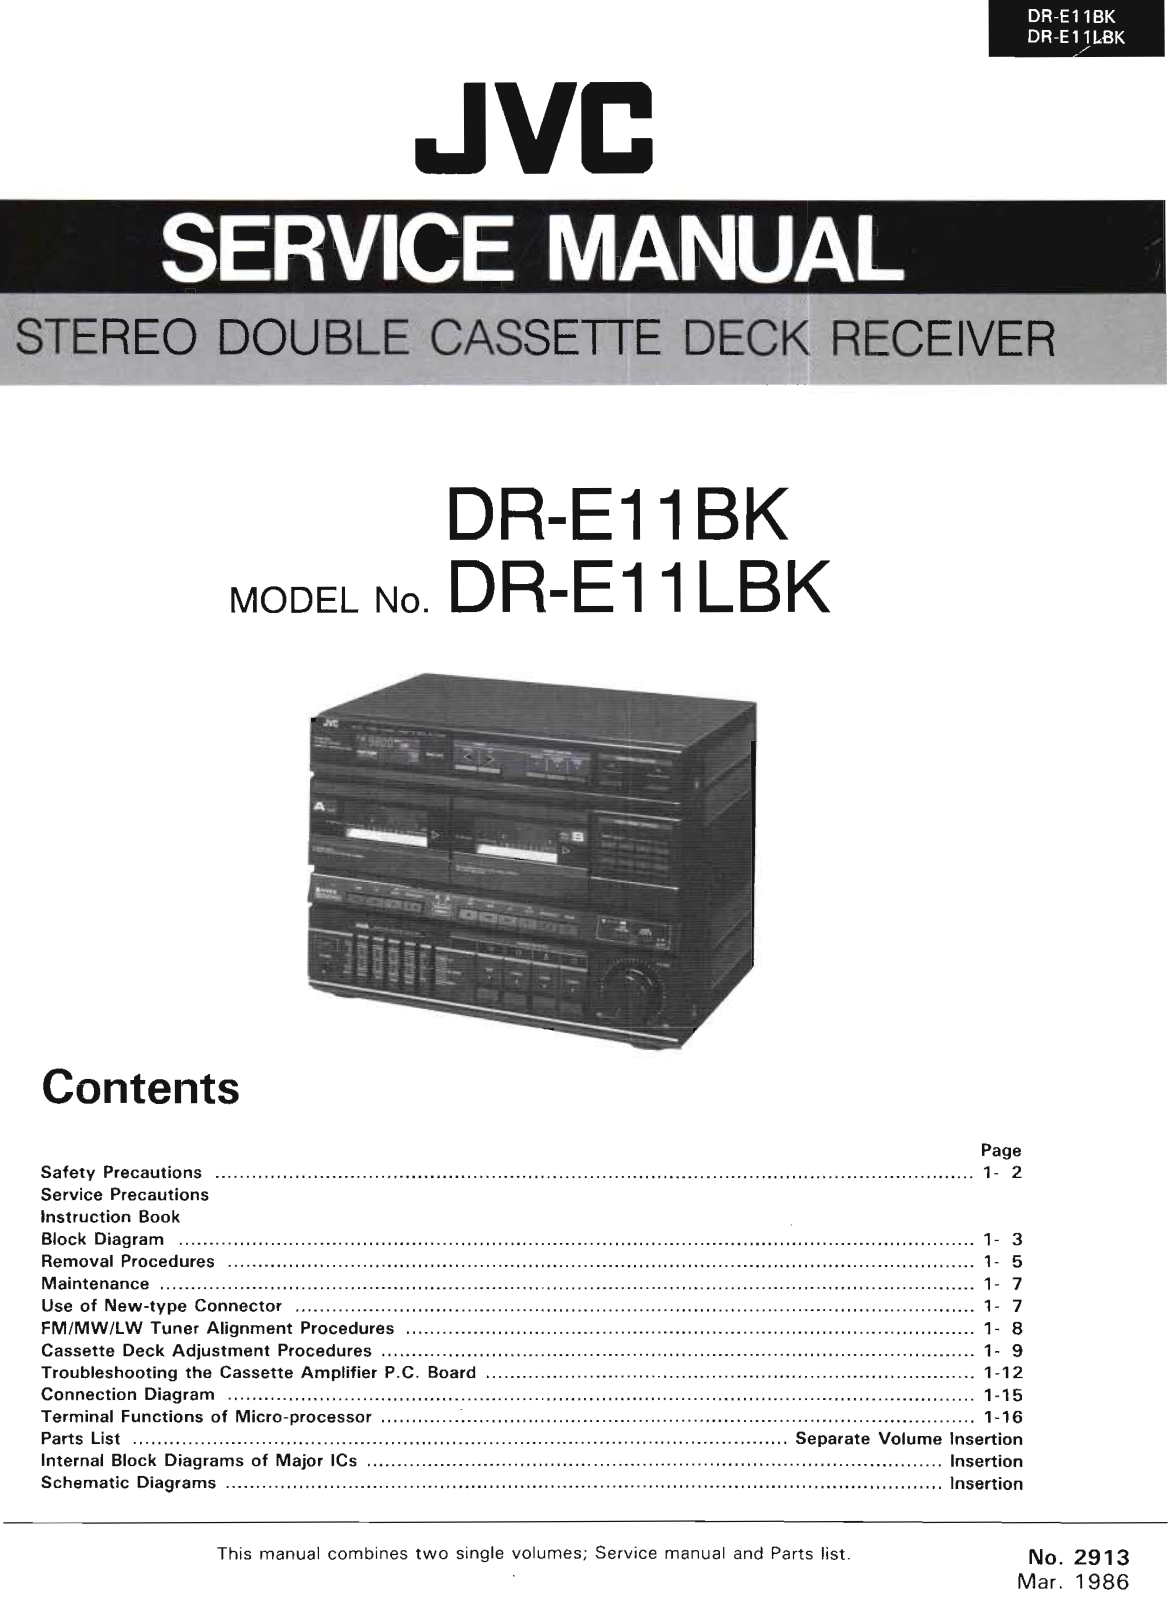 Jvc DR-E11-LBK, DR-E11-BK Service Manual